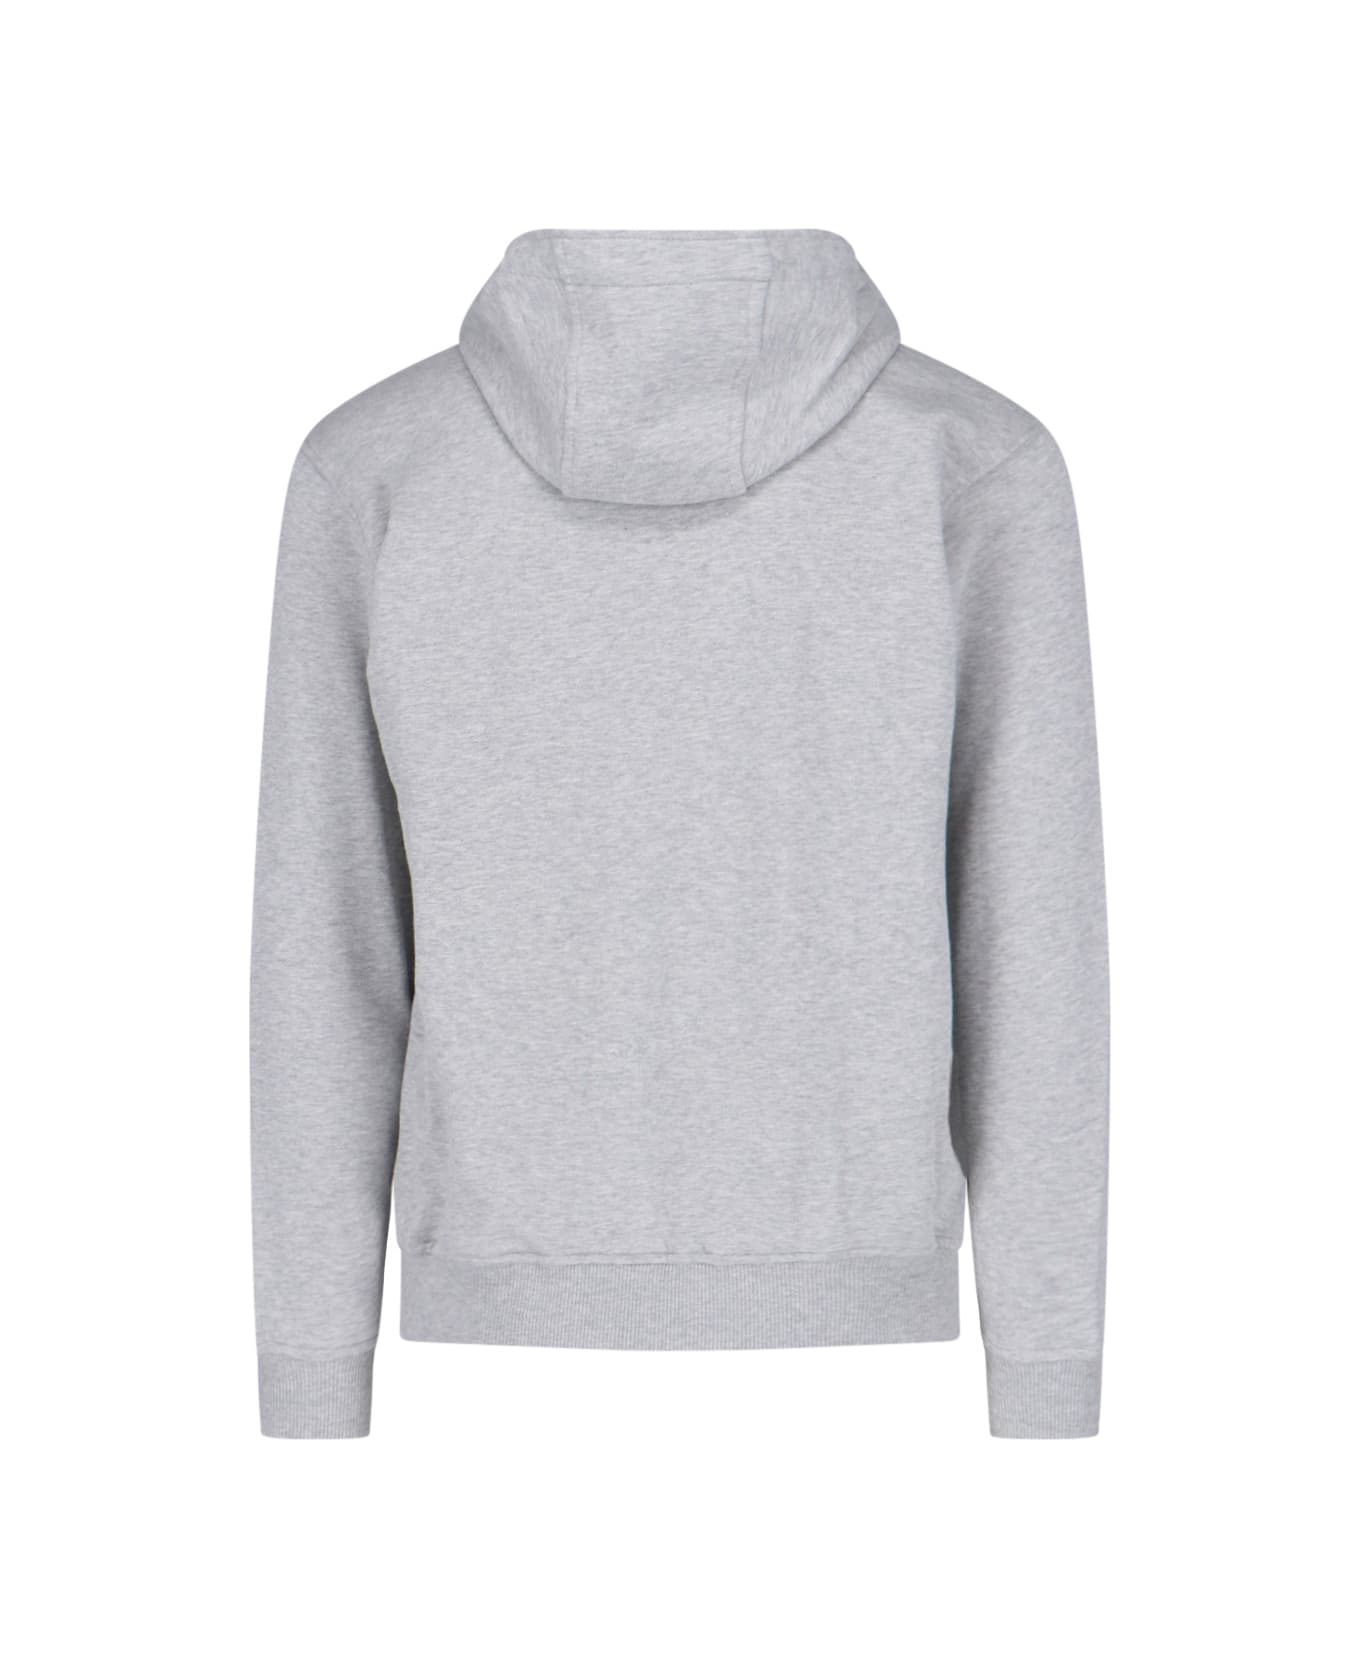 Comme des Garçons Printed Zip Sweatshirt - Gray フリース